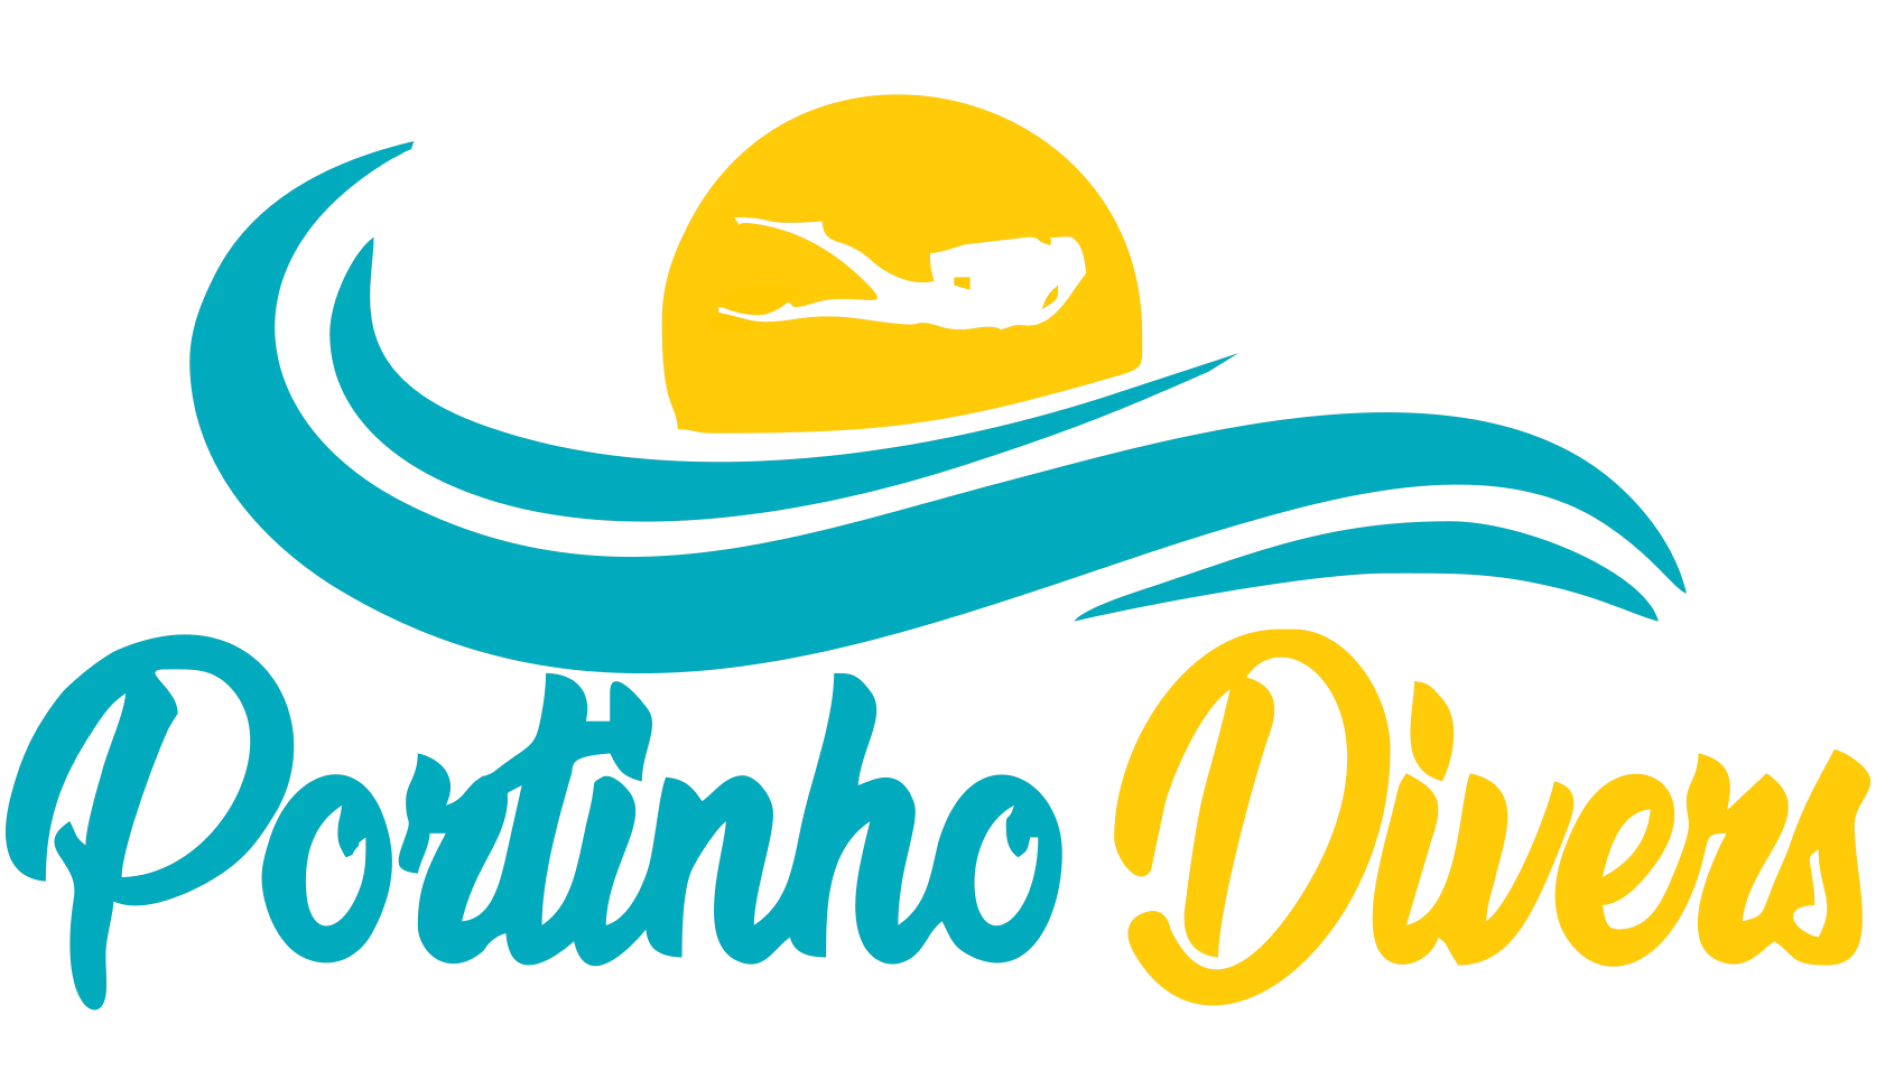 Portinho Divers